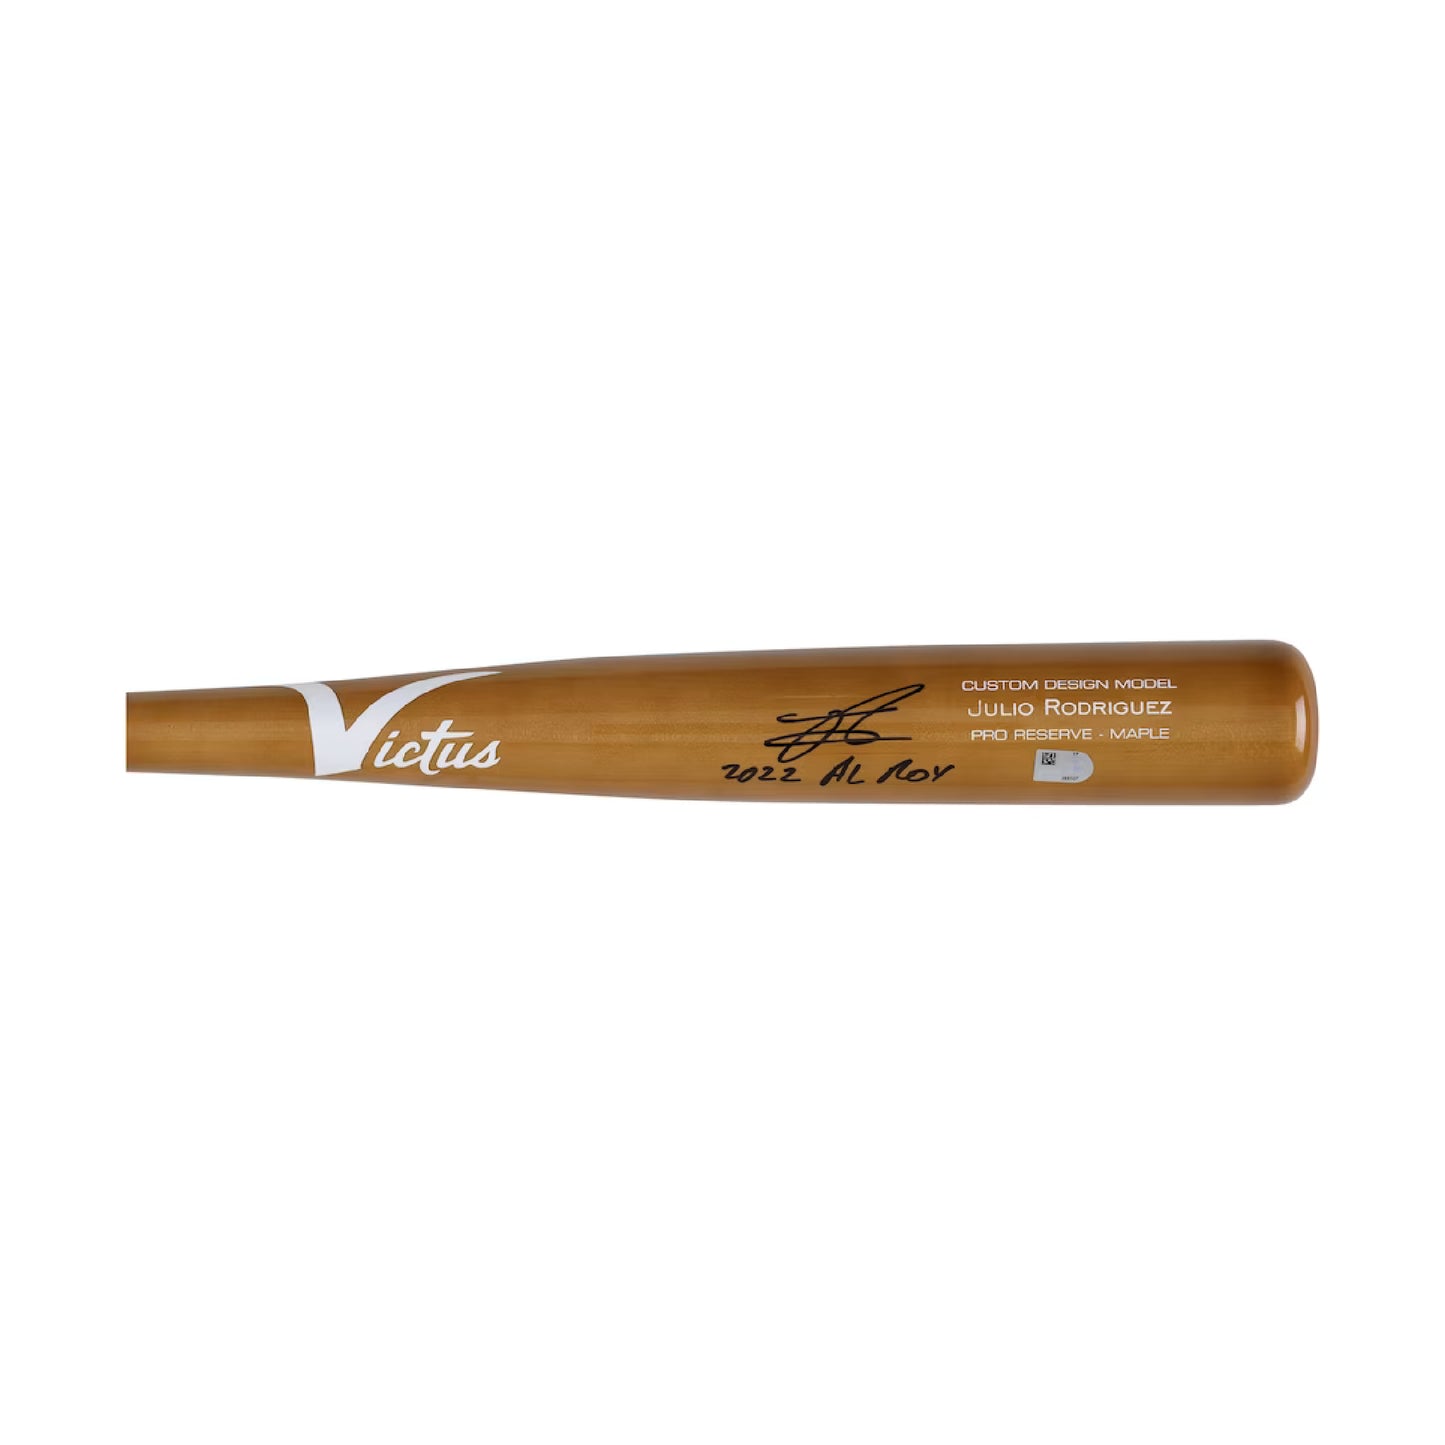 Fanatics Authentic Julio Rodriguez Autographed Victus Game Model Bat w/ "22 AL ROY" Inscription